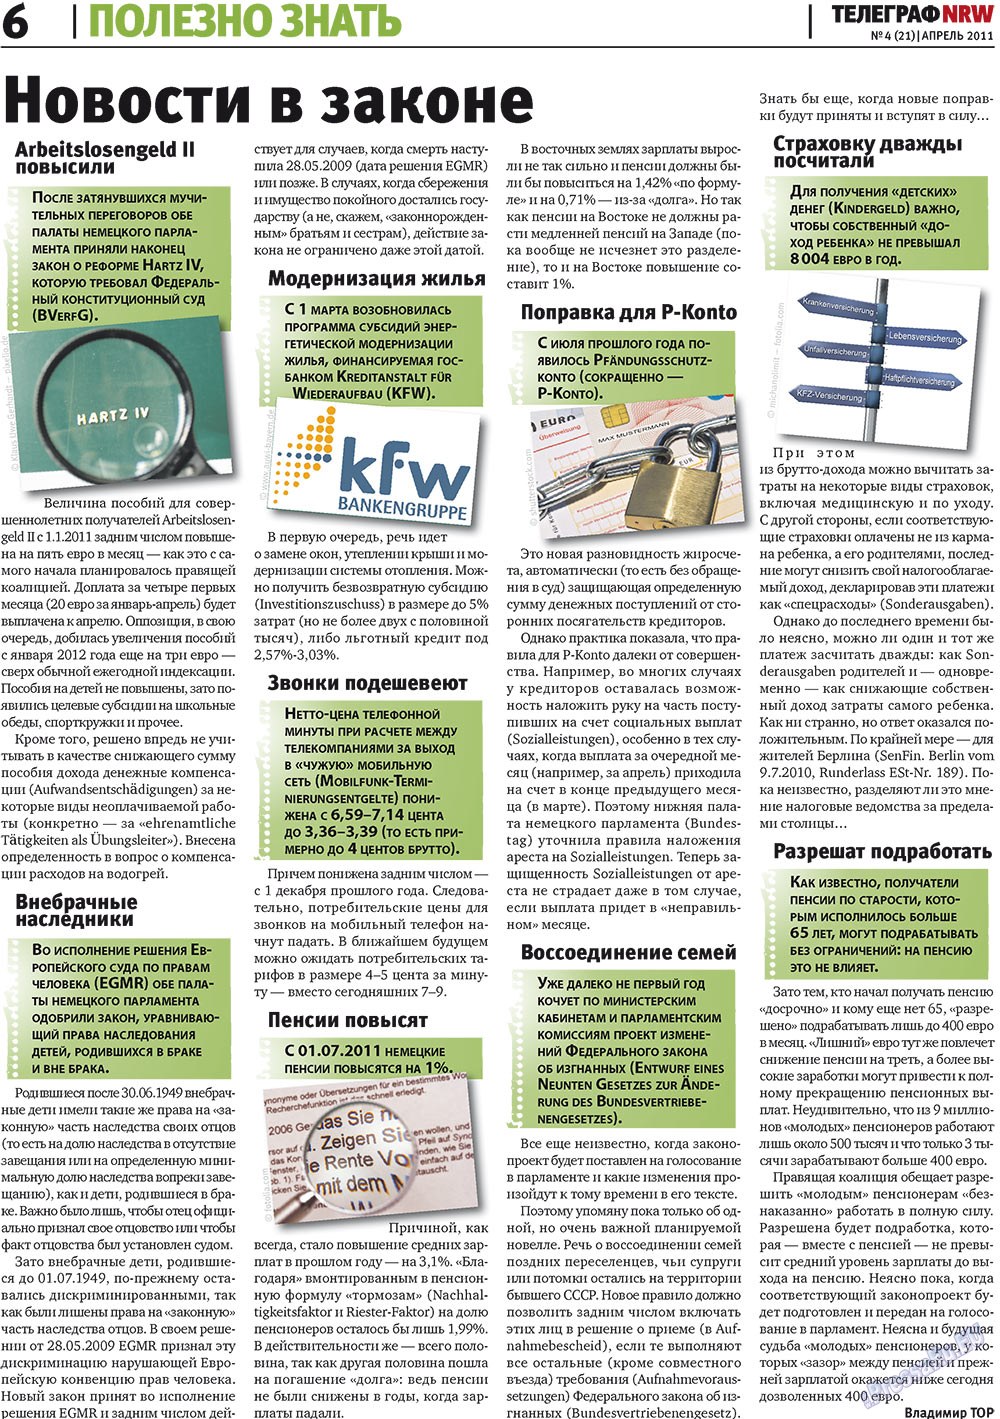 Телеграф NRW (газета). 2011 год, номер 4, стр. 6